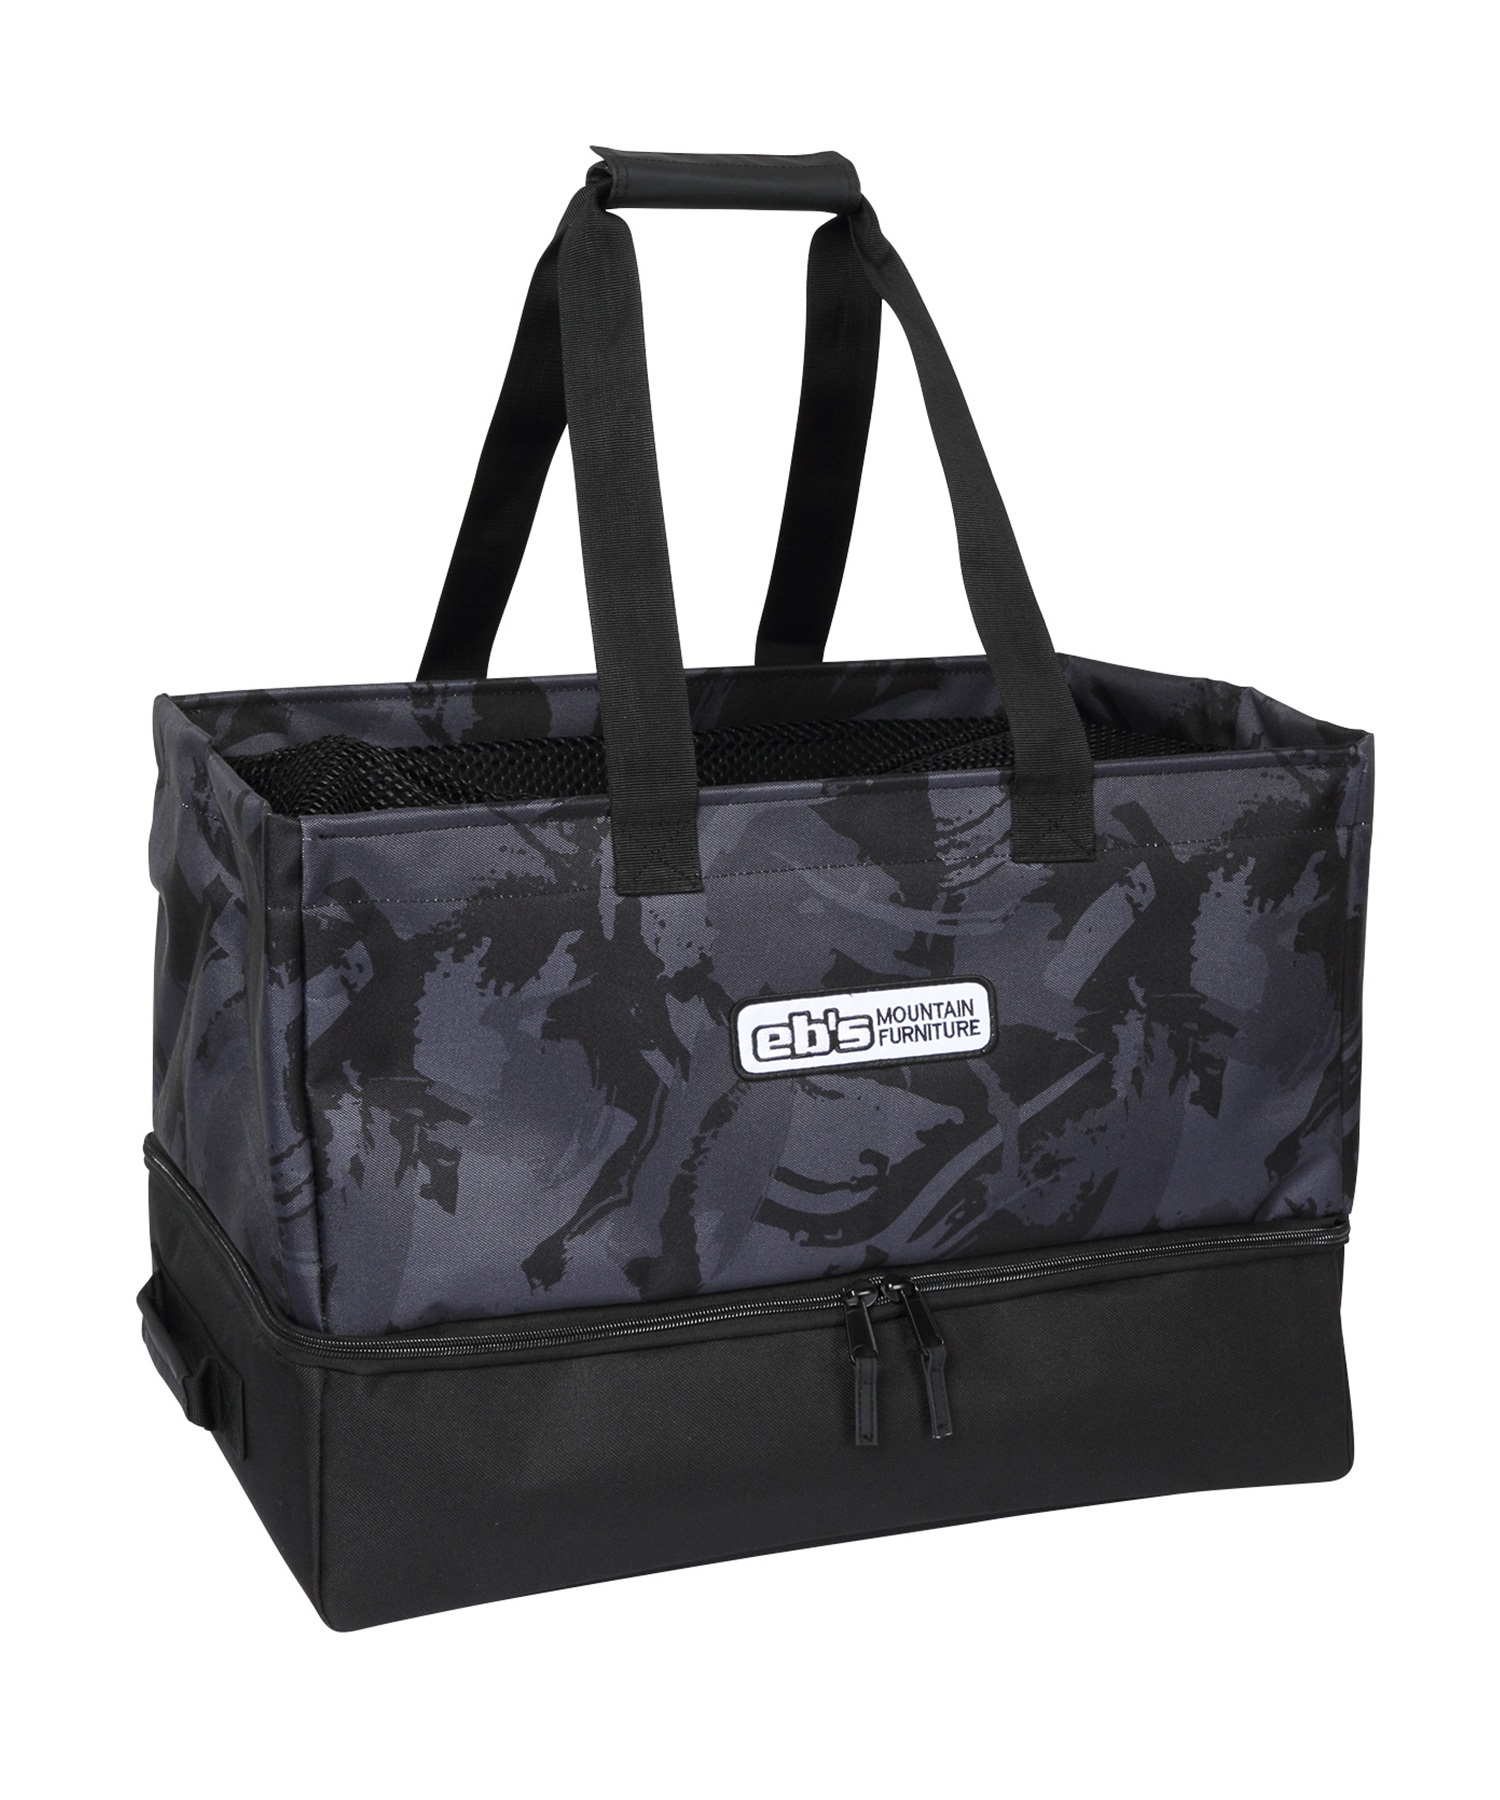 スノーボード バッグ ブーツケース eb's エビス ARLOW BAG 23-24モデル